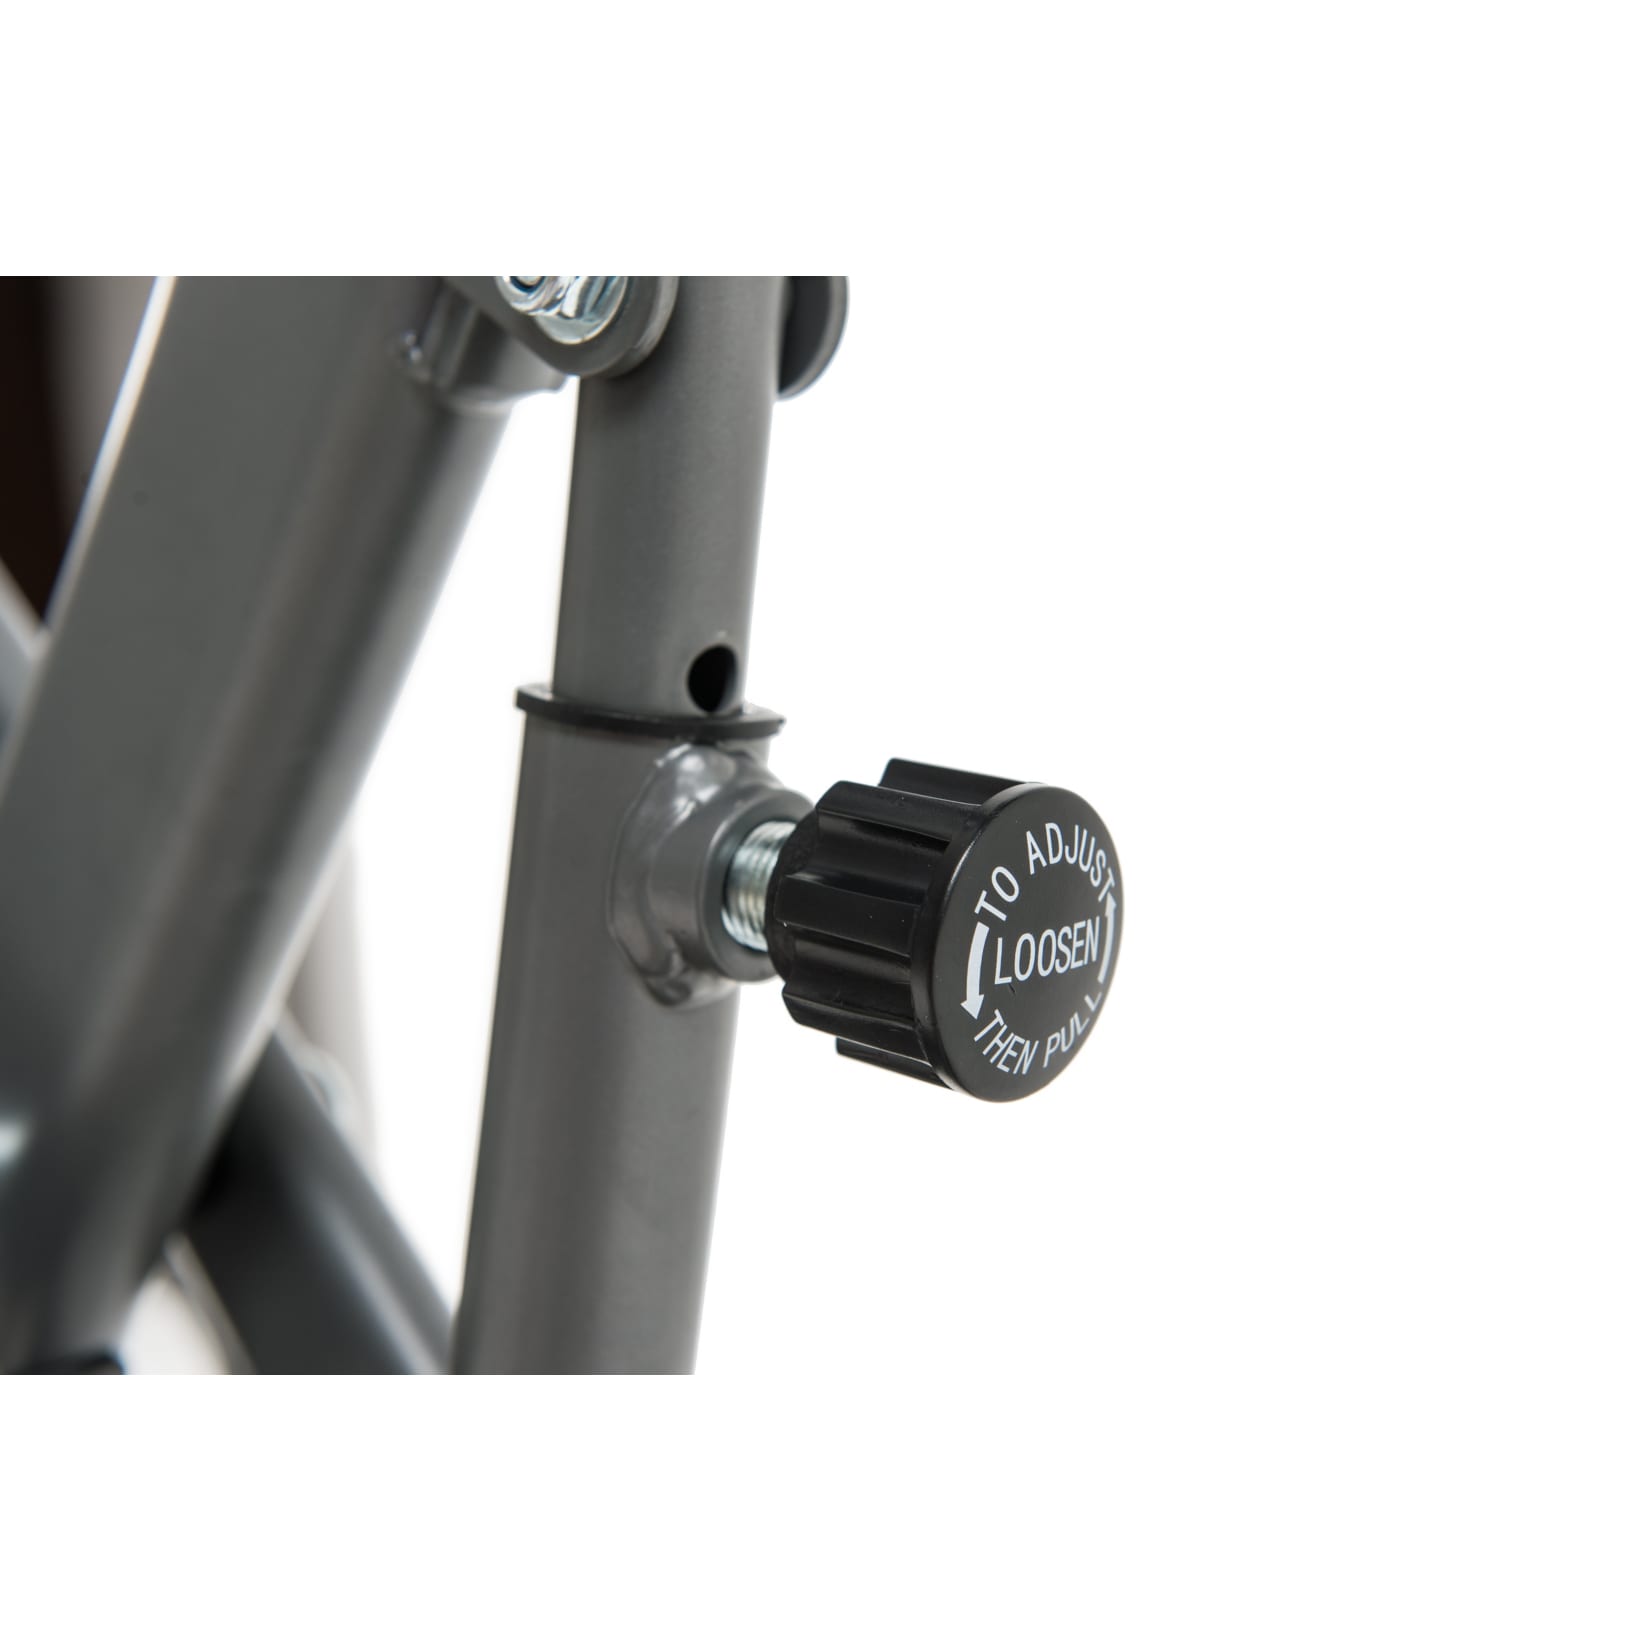 MOTIVE Multi-Function online X-Bike by Netto U.N.O kaufen bei FITNESS